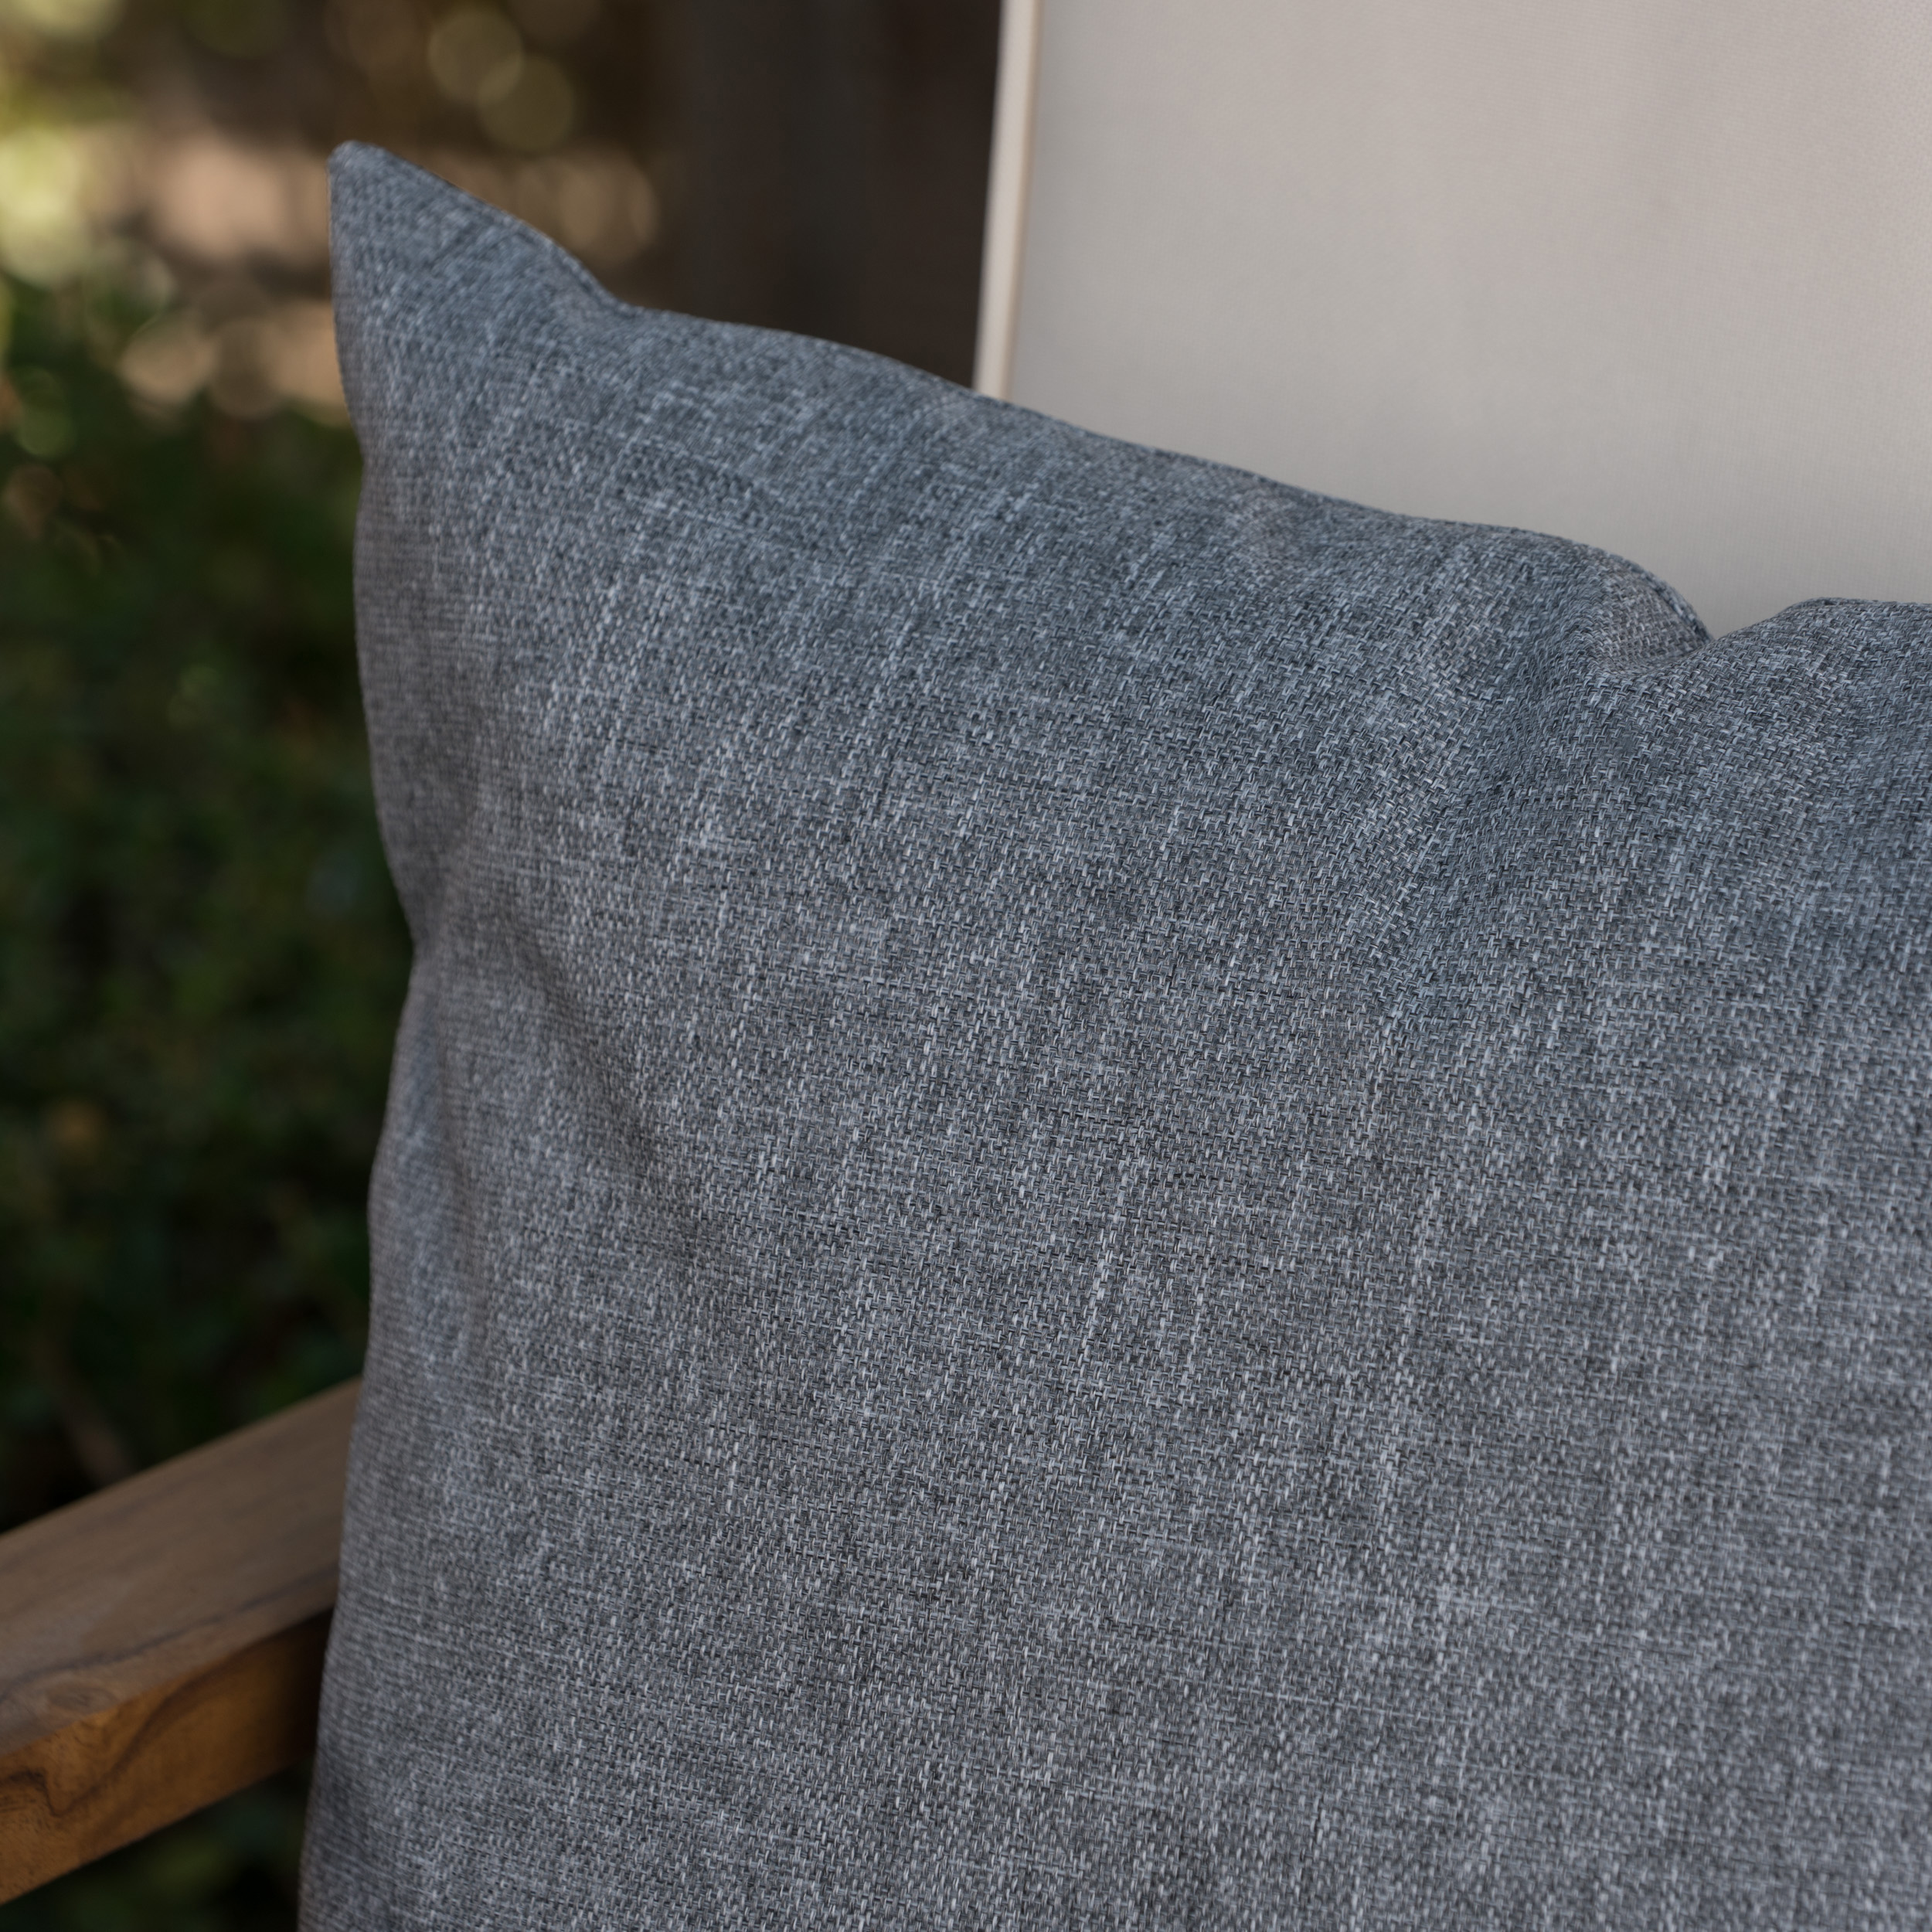 Noble House Coronado 18.5x11.5" Outdoor Fabric Throw Pillow in Gray - image 9 of 11